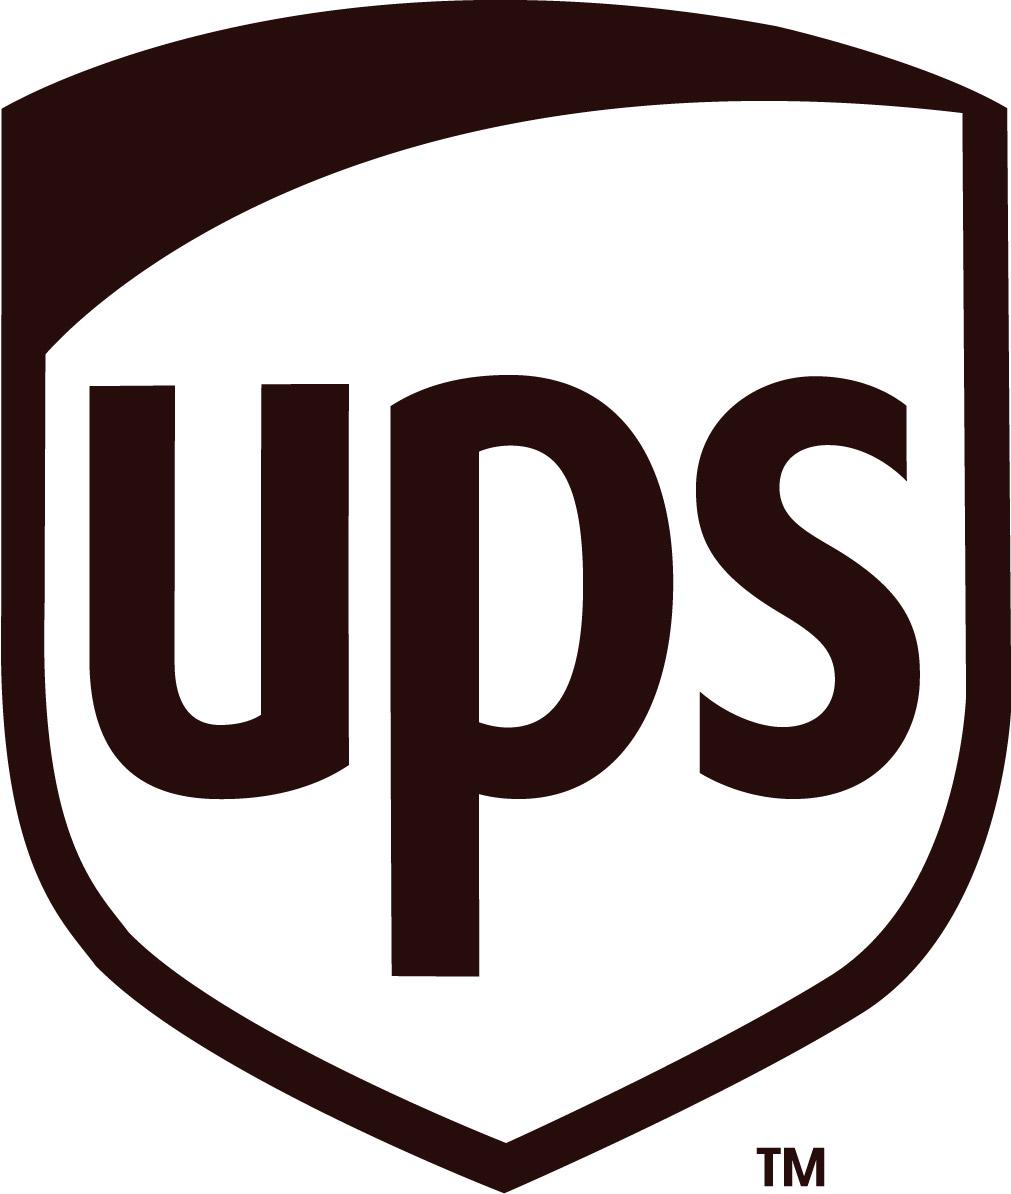 东莞麻涌UPS快递,麻涌UPS快递电话,USP网点